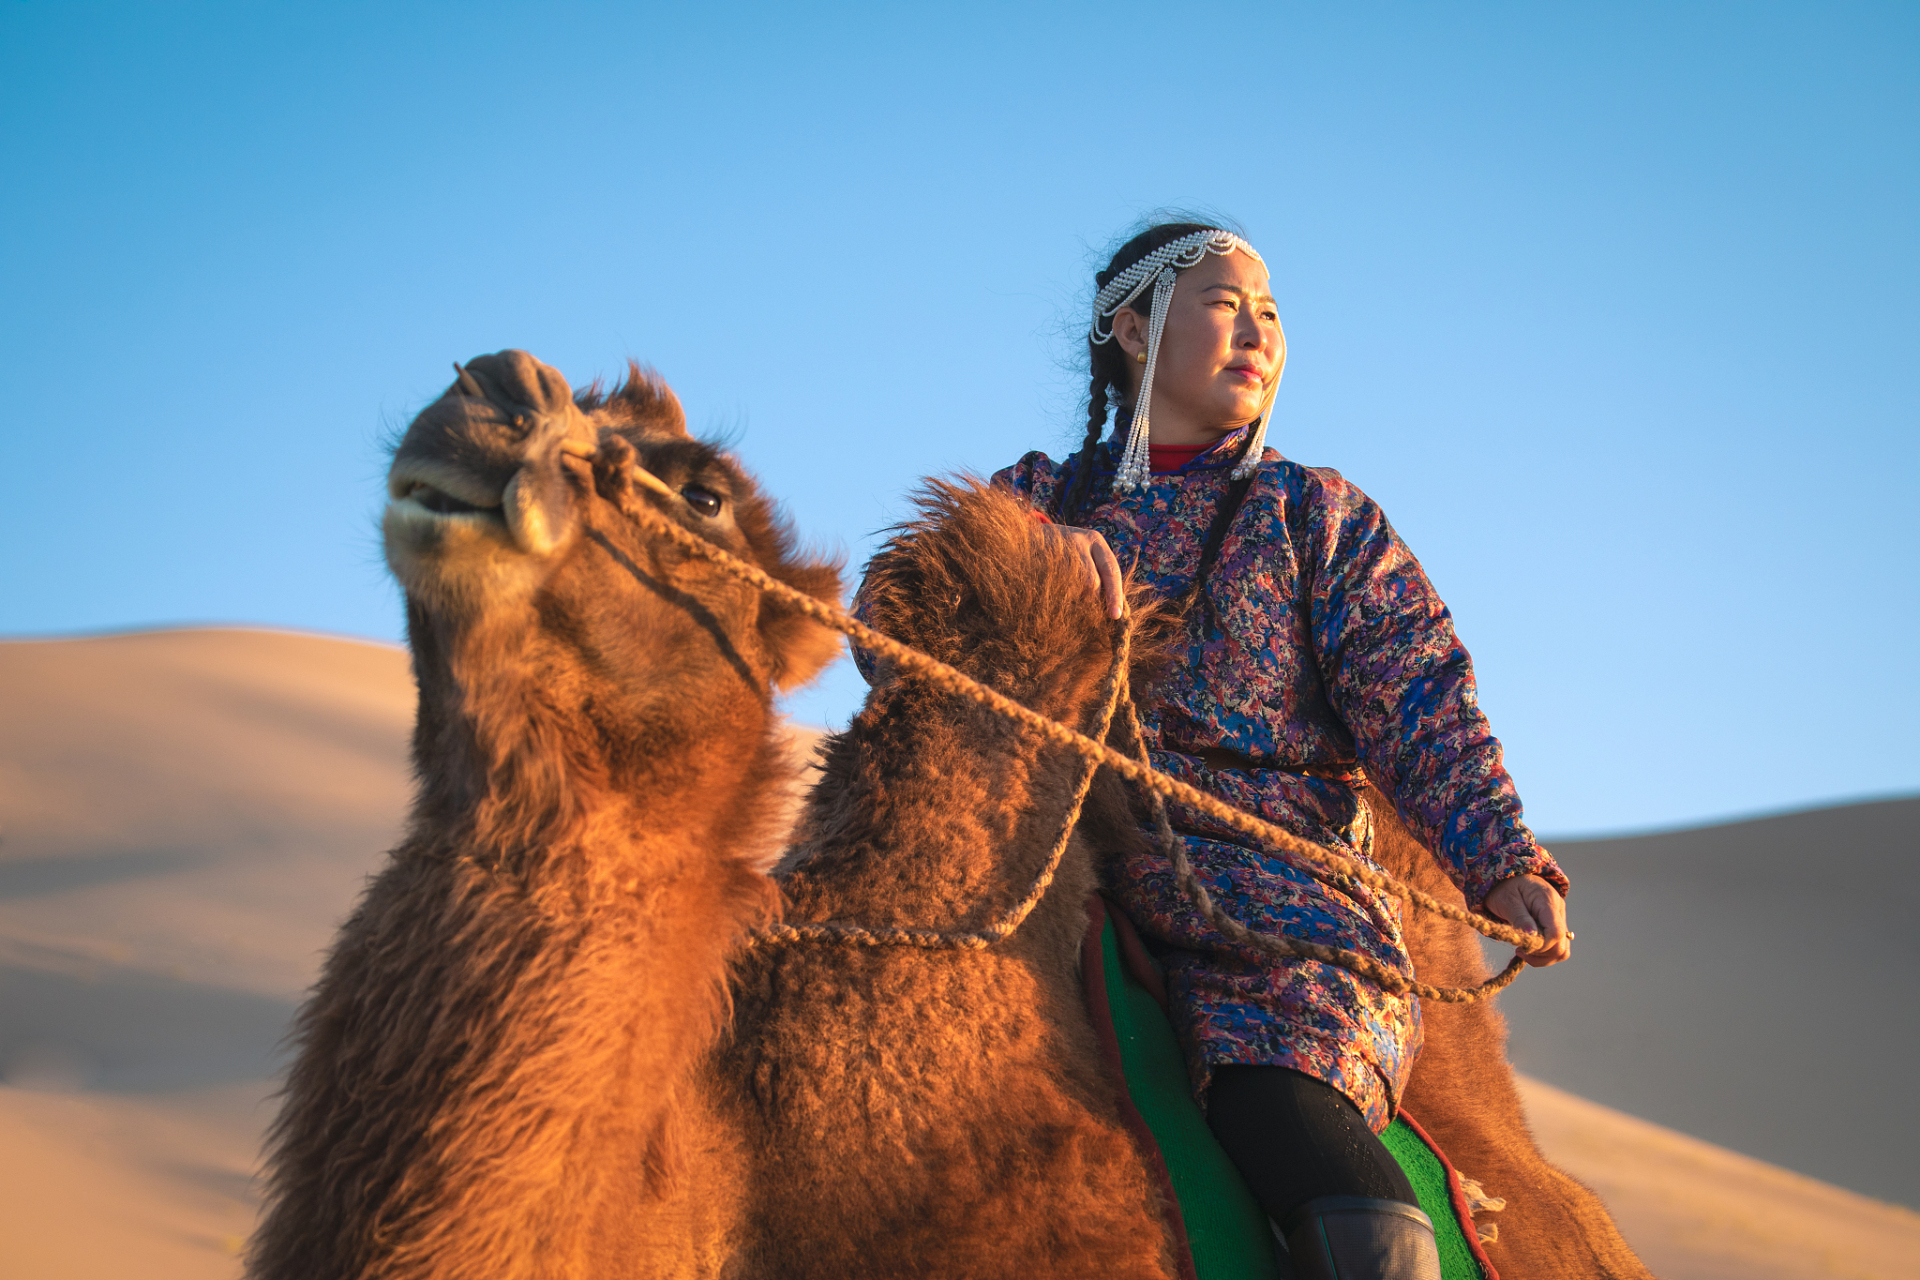 有一天,一个人在沙漠中遇到了一个骑着骆驼的牧民